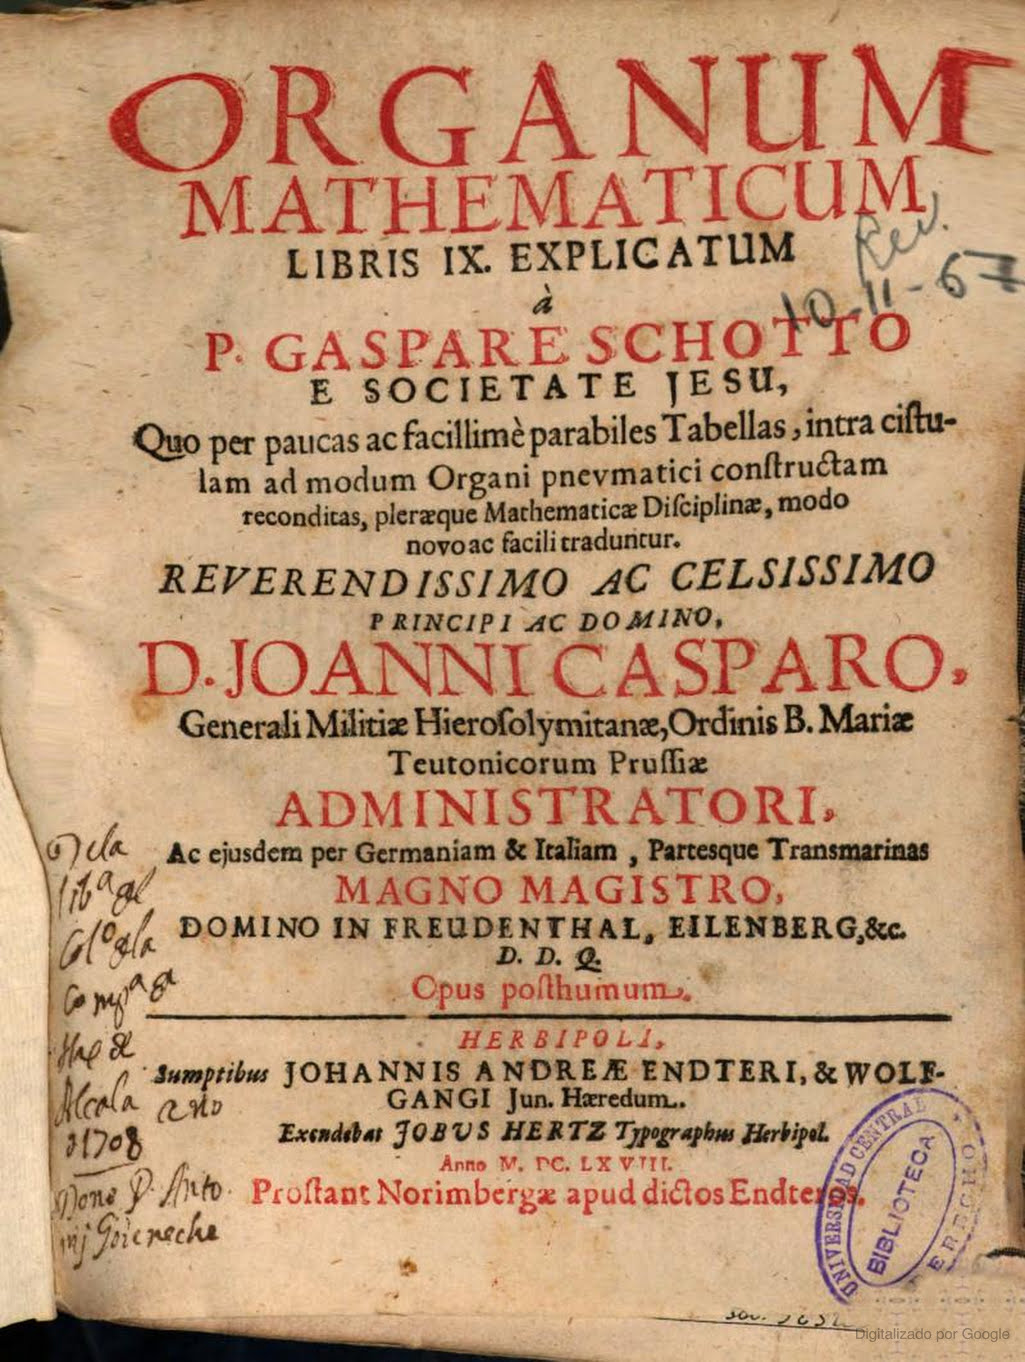 Organum mathematicum